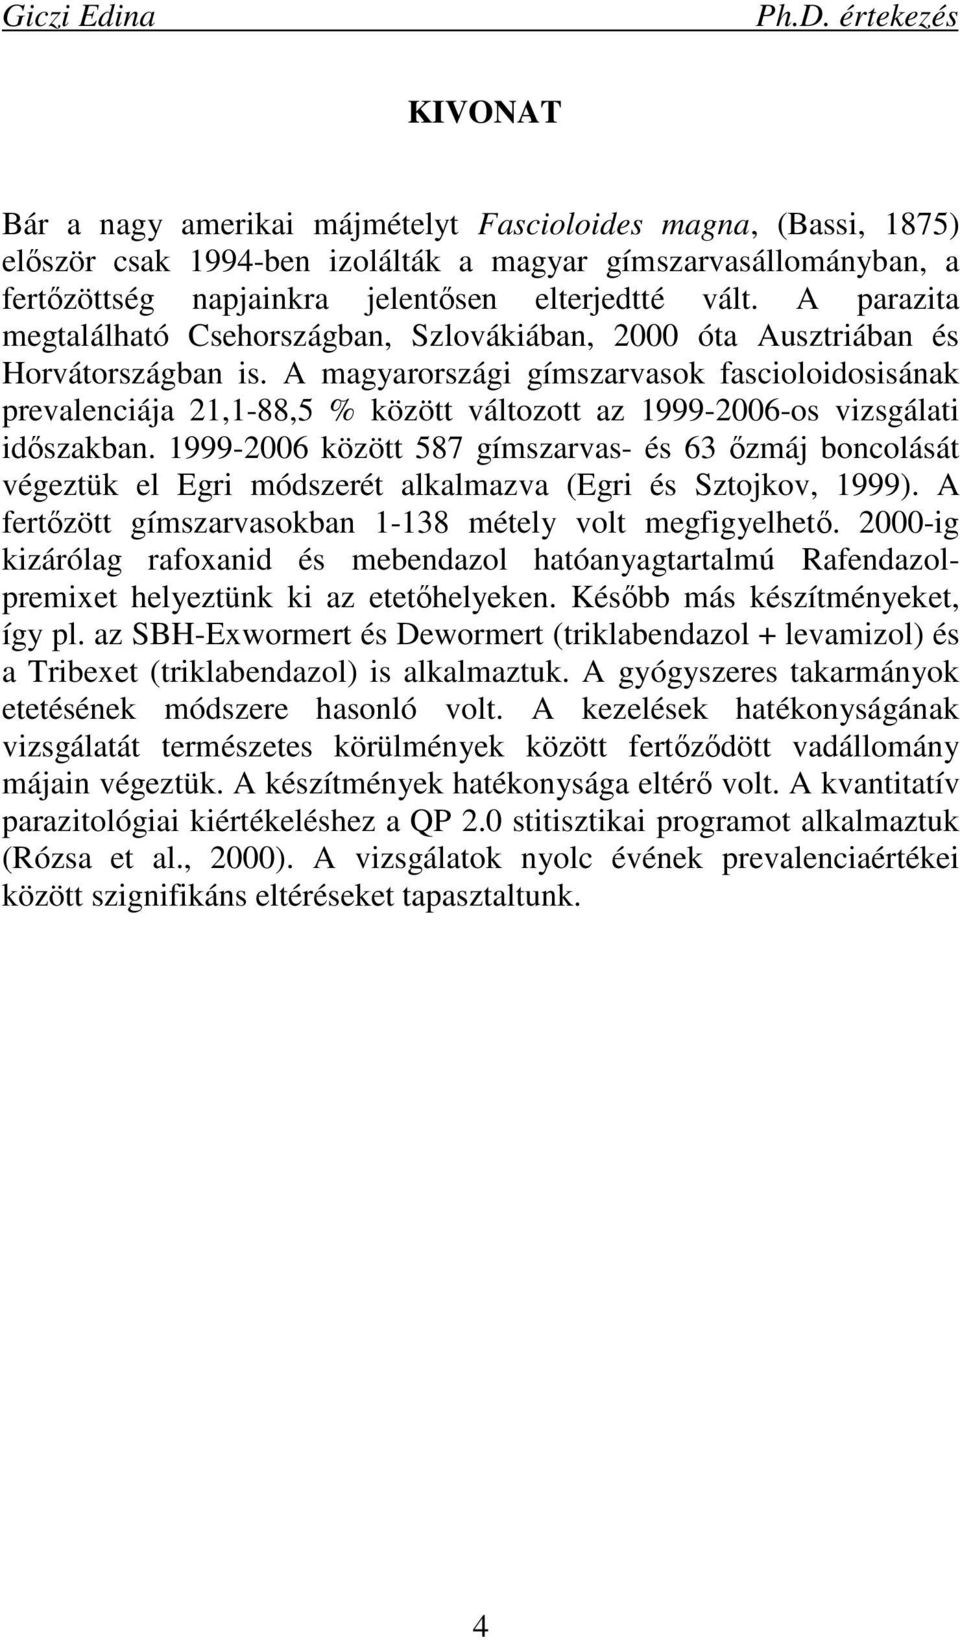 A magyarországi gímszarvasok fascioloidosisának prevalenciája 21,1-88,5 % között változott az 1999-2006-os vizsgálati idıszakban.